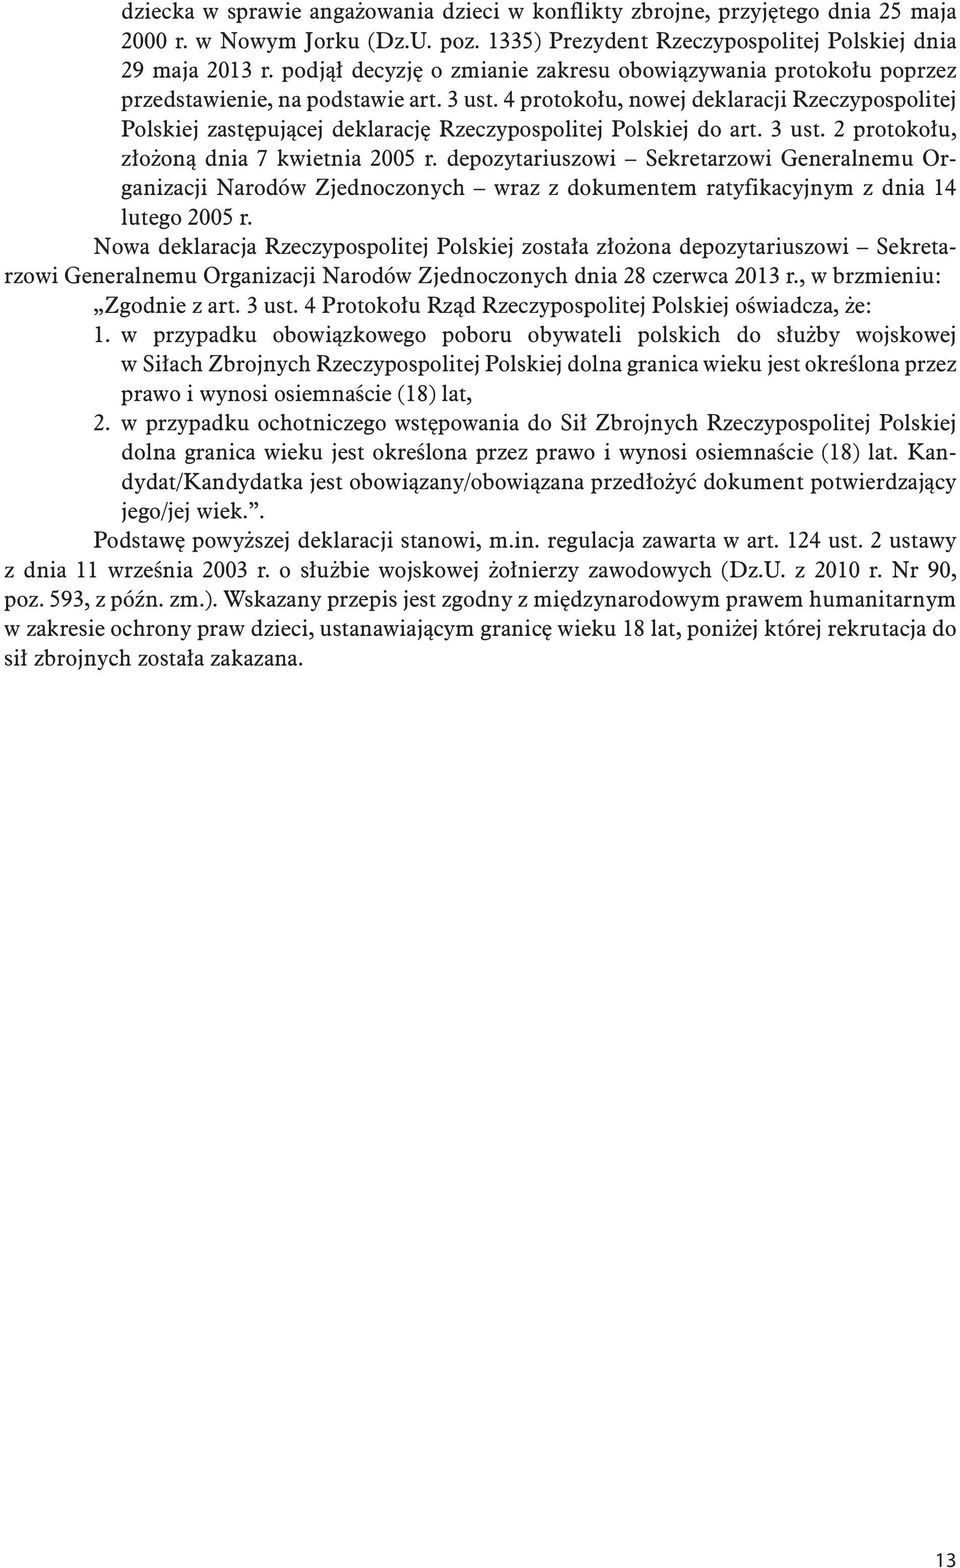 4 protokołu, nowej deklaracji Rzeczypospolitej Polskiej zastępującej deklarację Rzeczypospolitej Polskiej do art. 3 ust. 2 protokołu, złożoną dnia 7 kwietnia 2005 r.